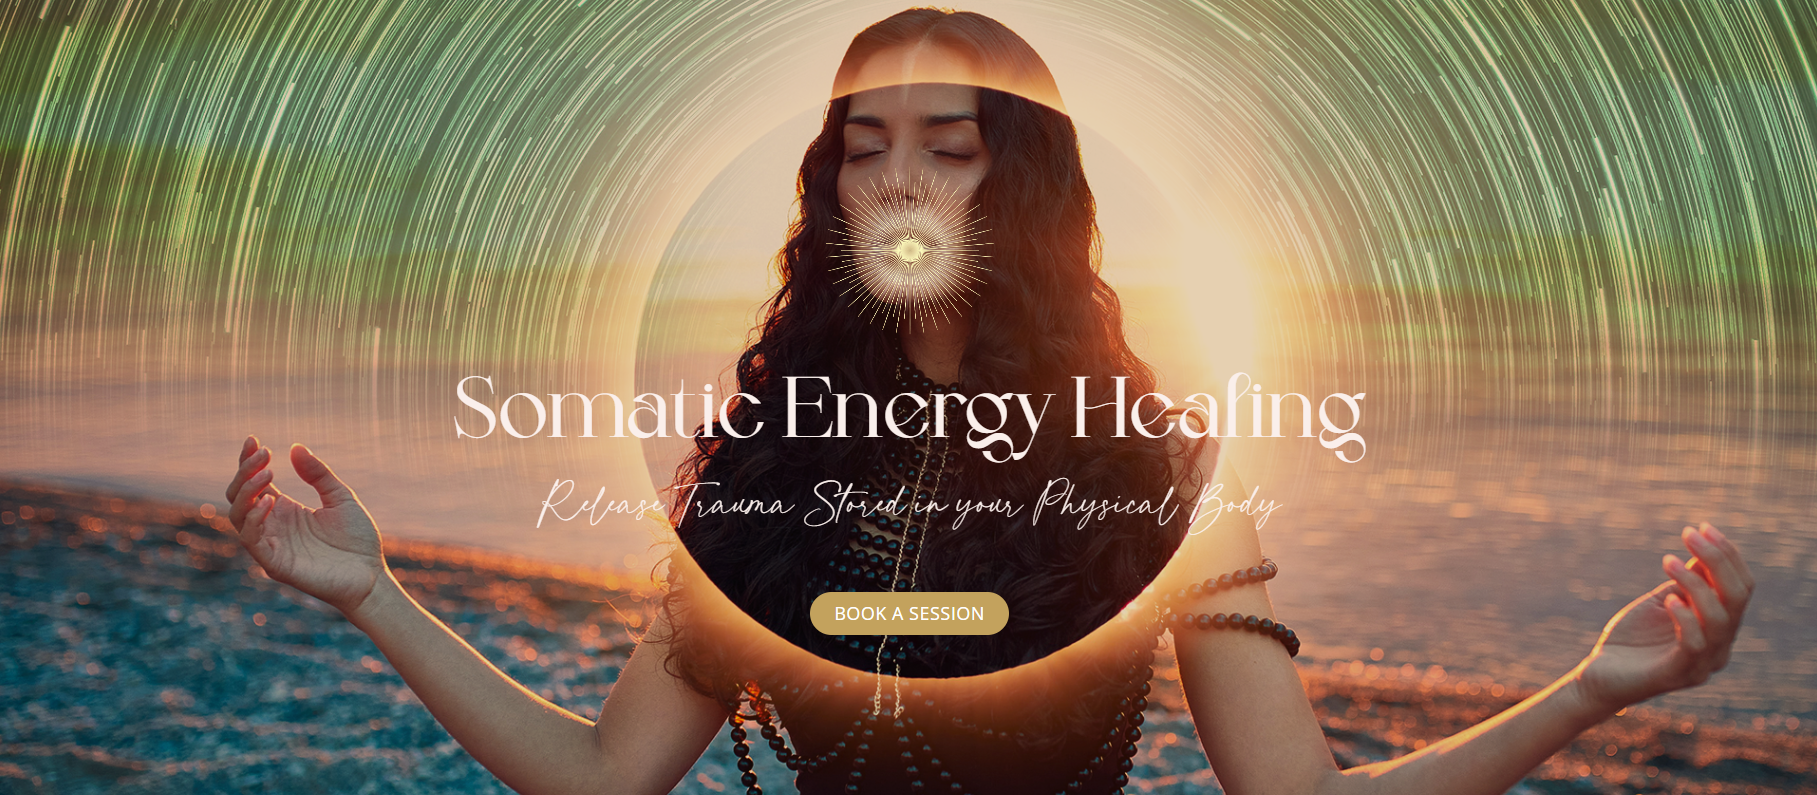 Somatic Energy Healing